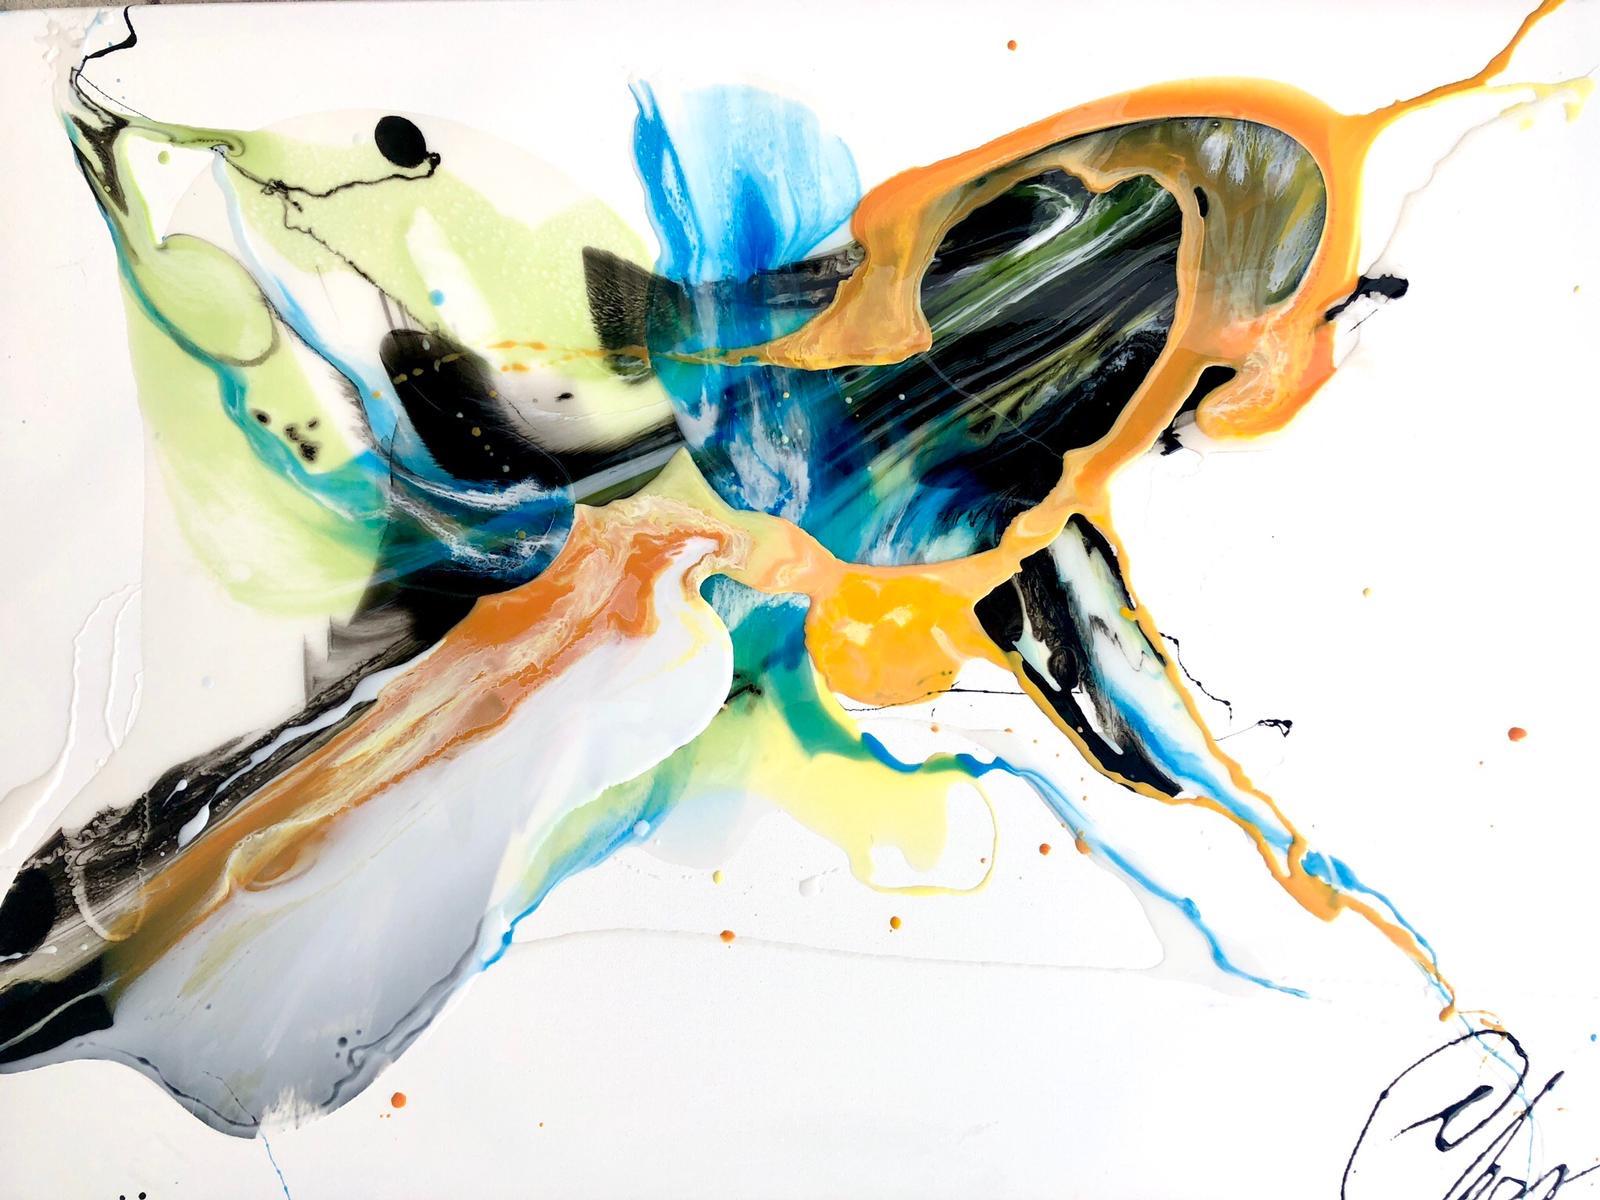 Blue Flows n° 2 - peinture abstraite en bleu clair, jaune, orange, noir et blanc - Art de Lena Cher